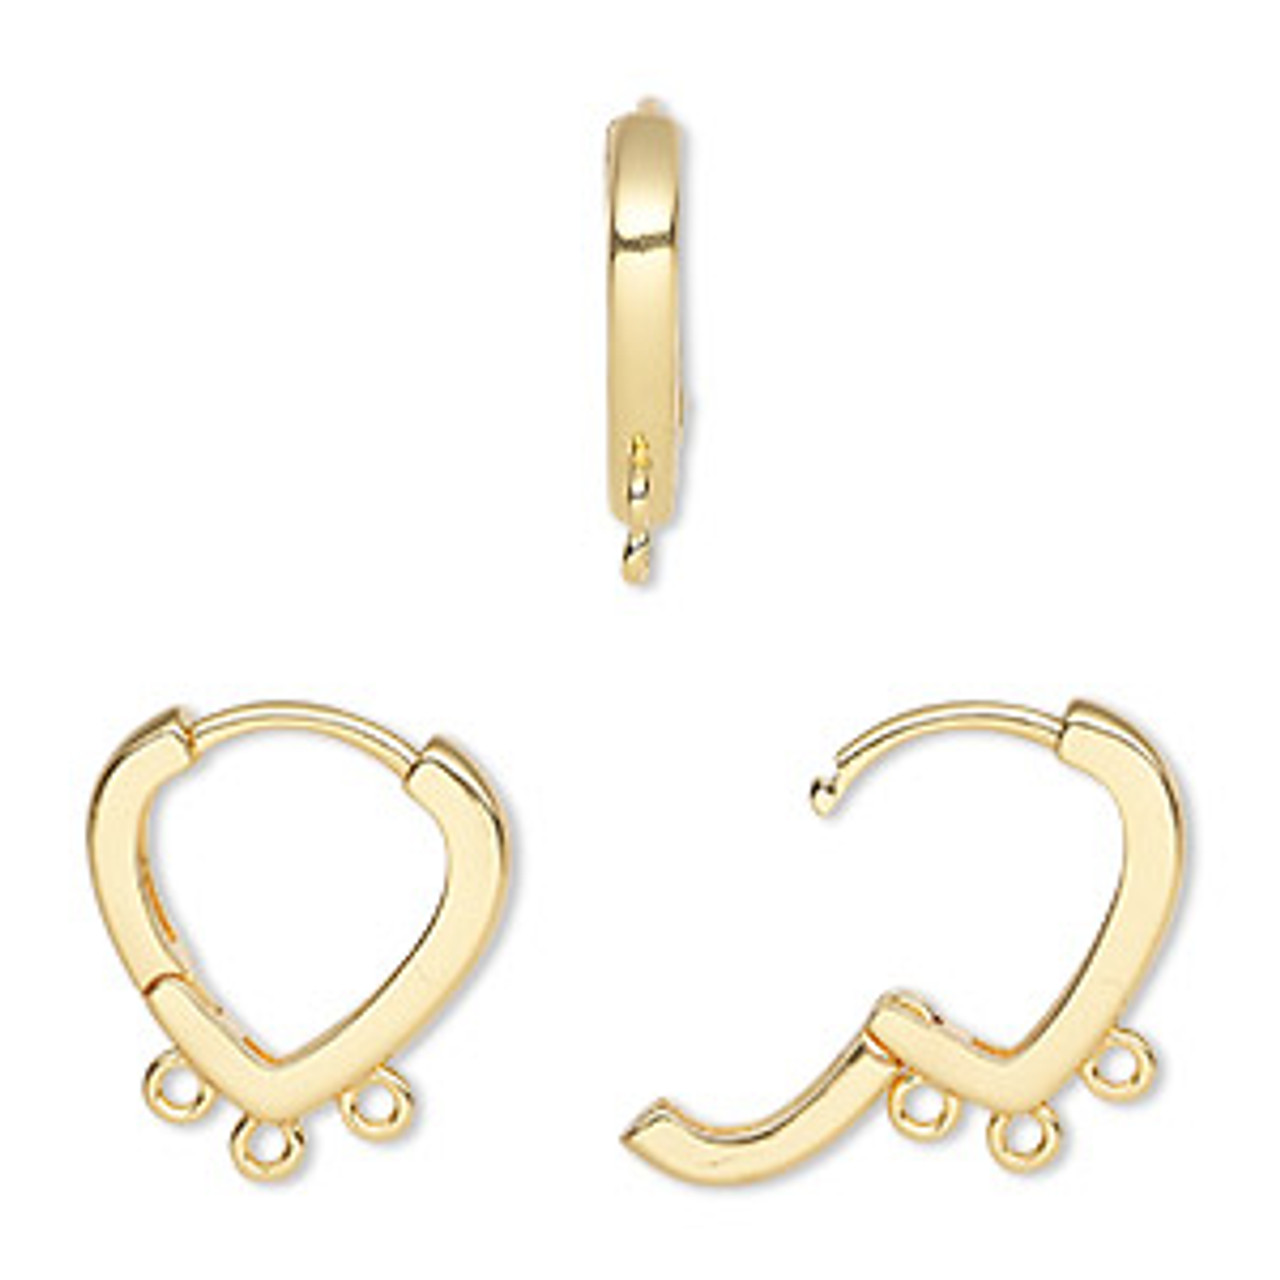 Stainless steel huggie hoops with loop, Gold, Silver, Earring findings